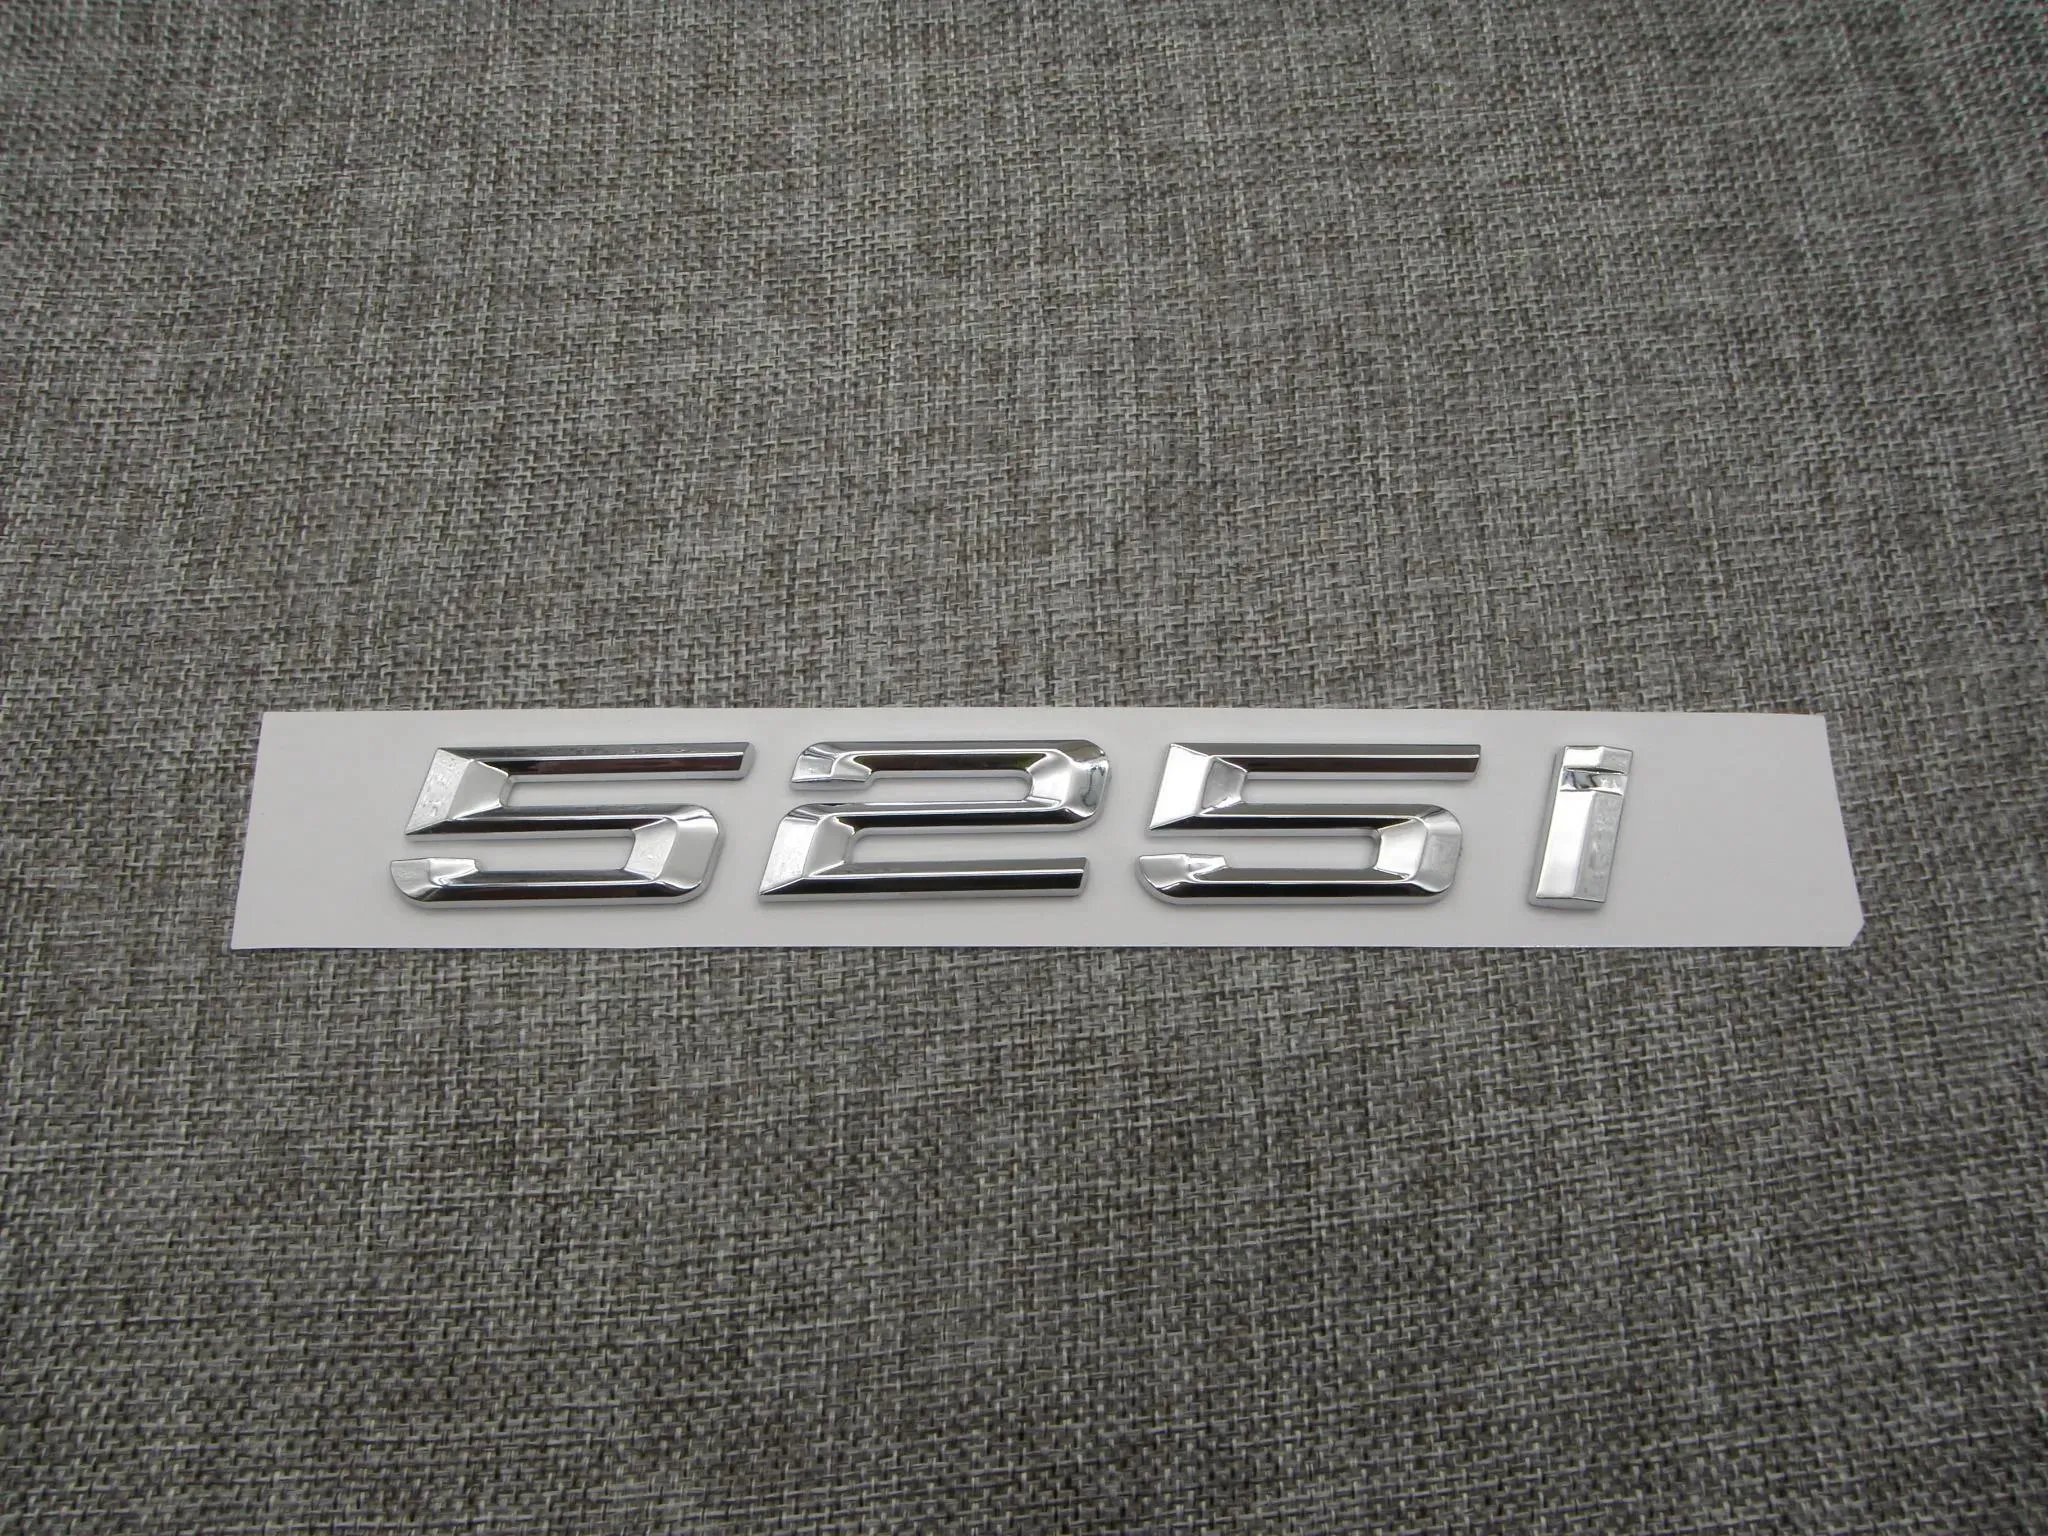 ملصقات رقم الكروم ترانك أحرف خلفية شارات شارات الشارات ل BMW 5 Series 525i